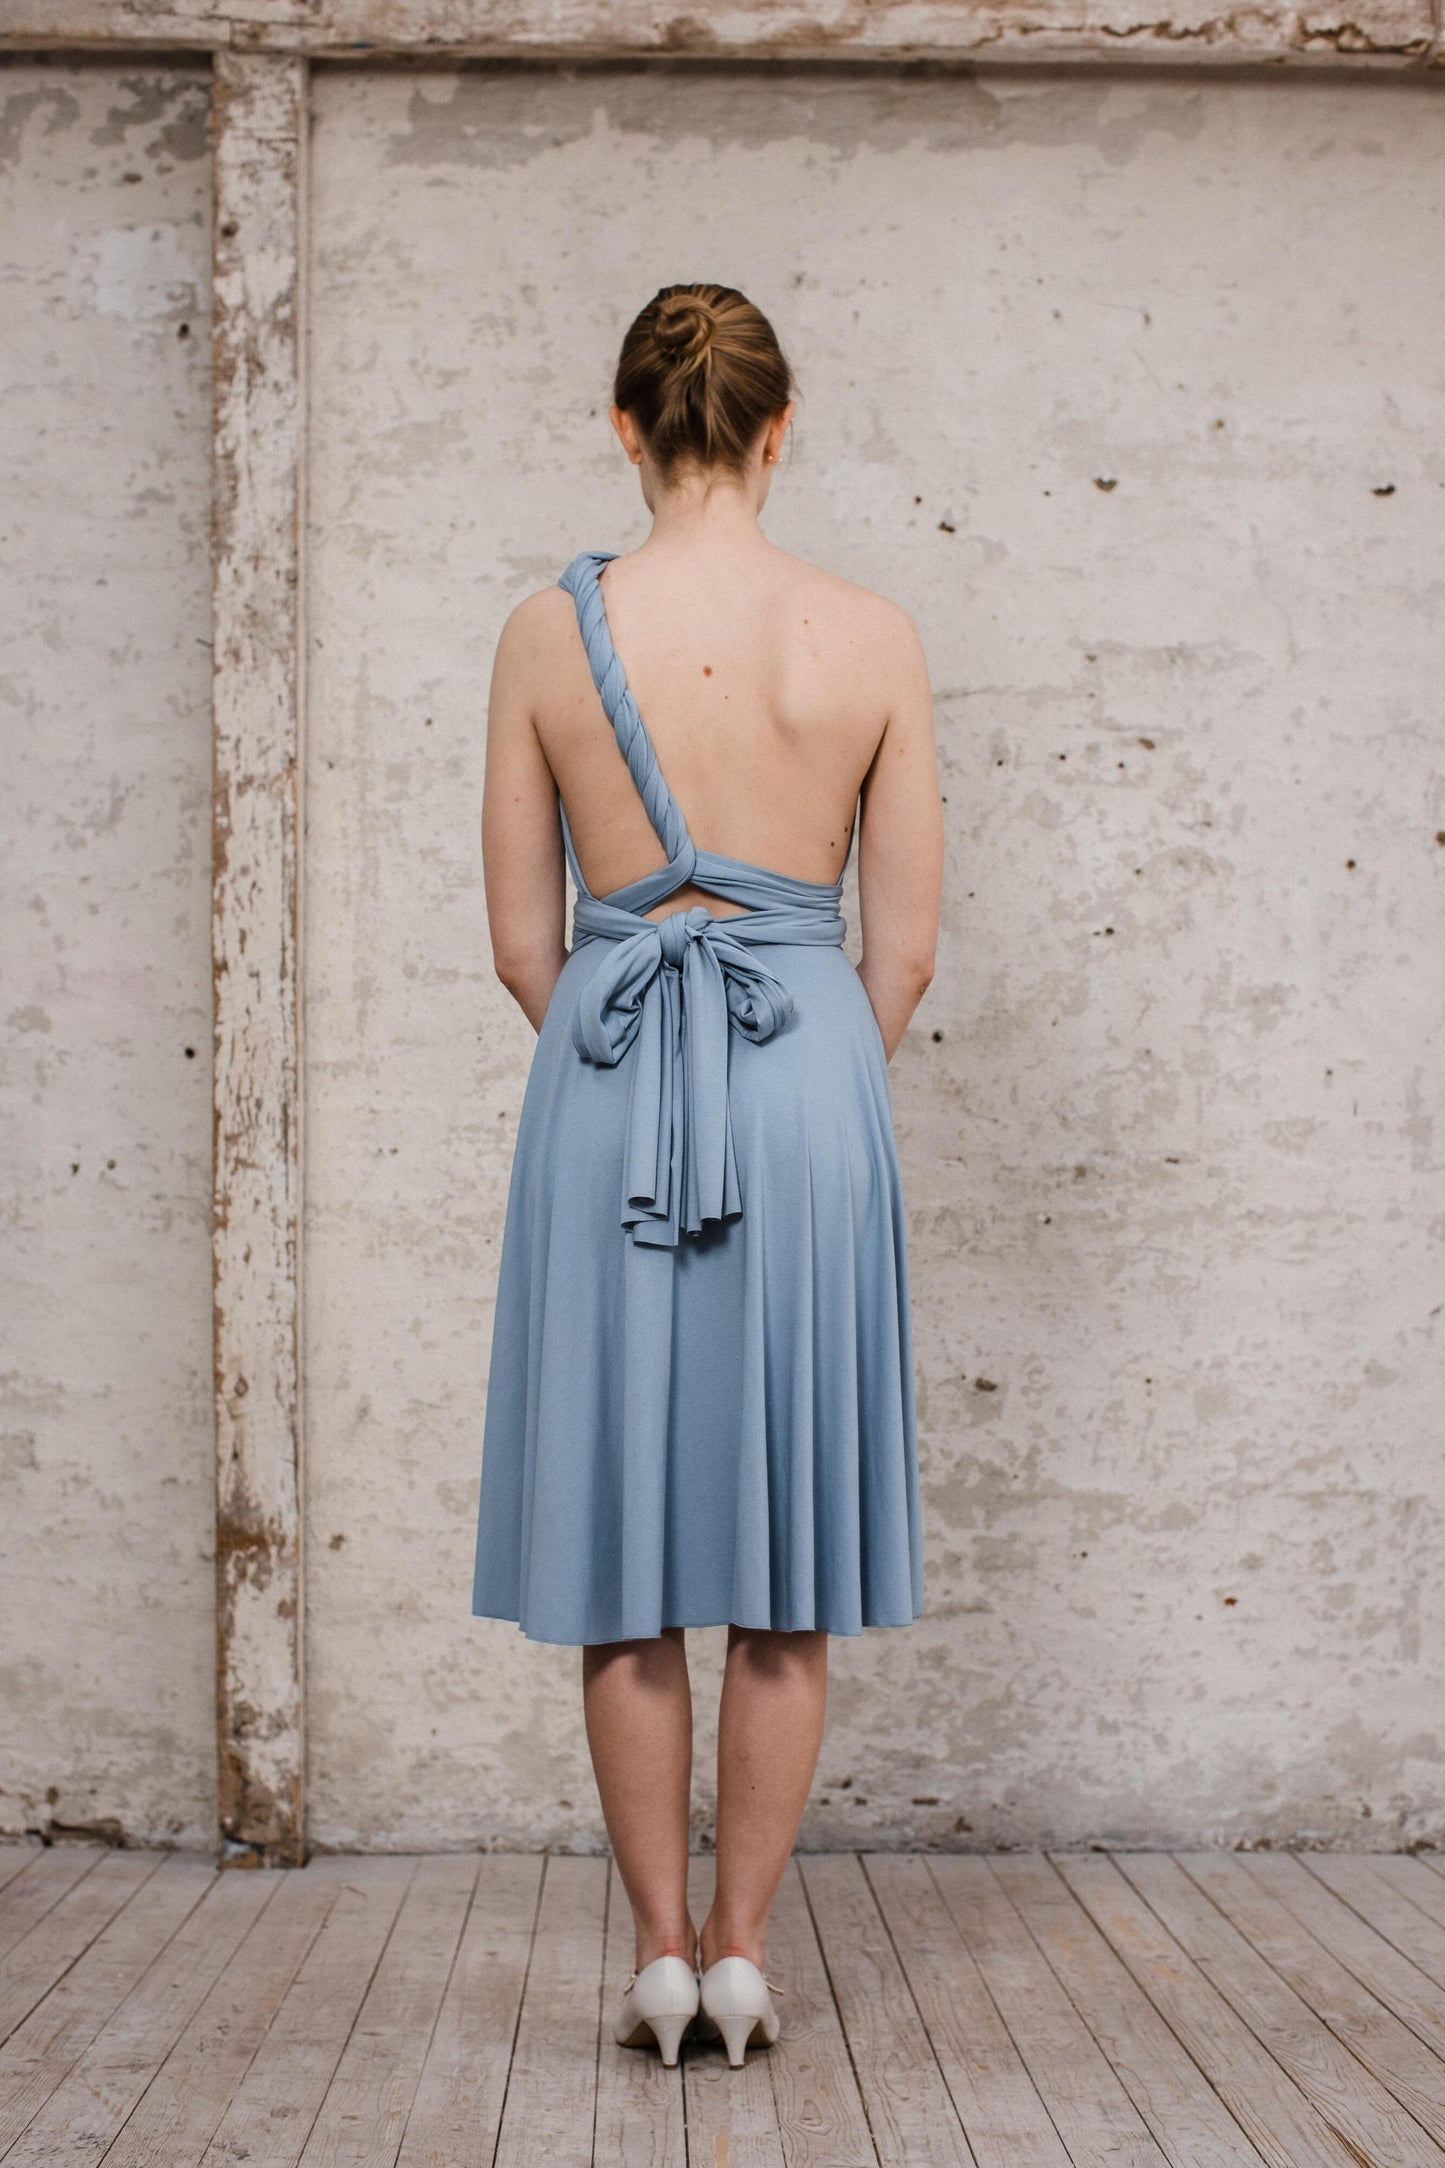 Infintiy Dress "Primrose" kurzes Multitie-Kleid in Silberblau